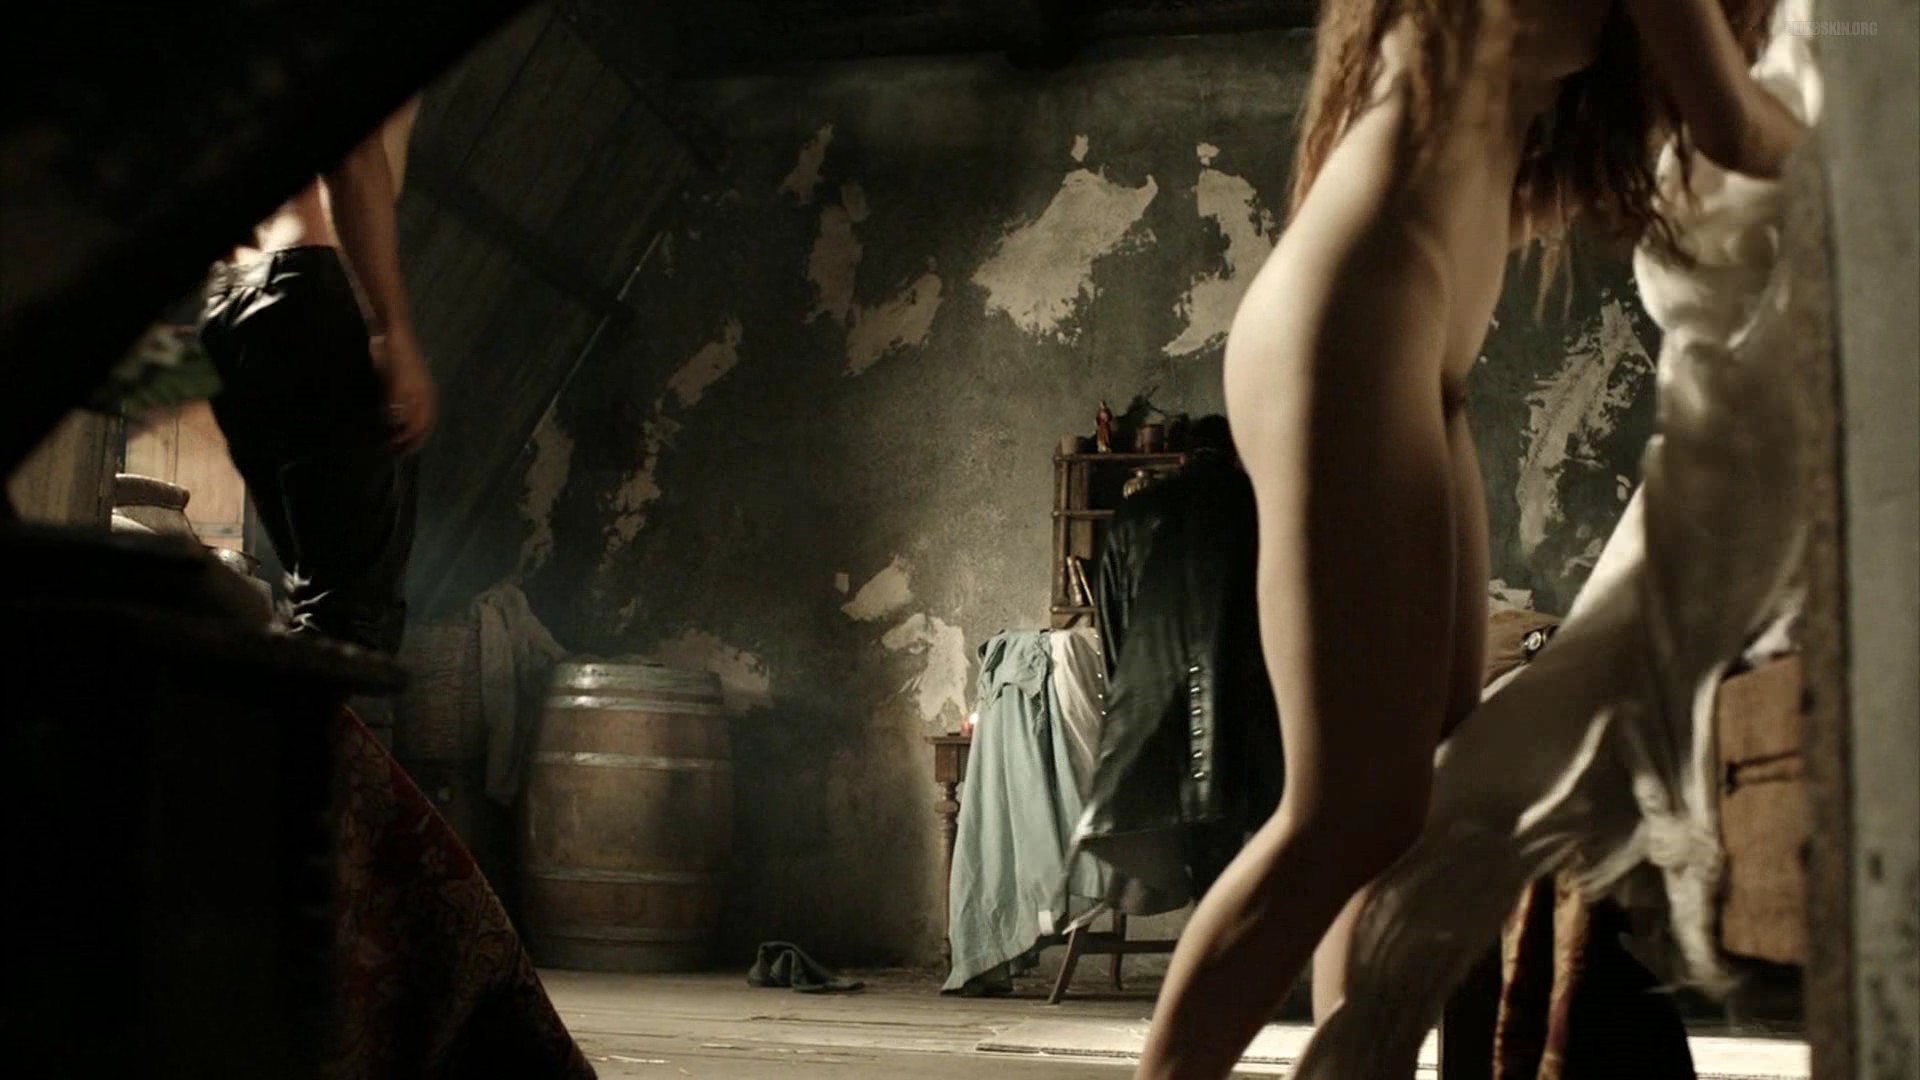 Teal Haddock nackt - 🧡 Da Vinci's Demons nude pics, página - 2 ANCENS...